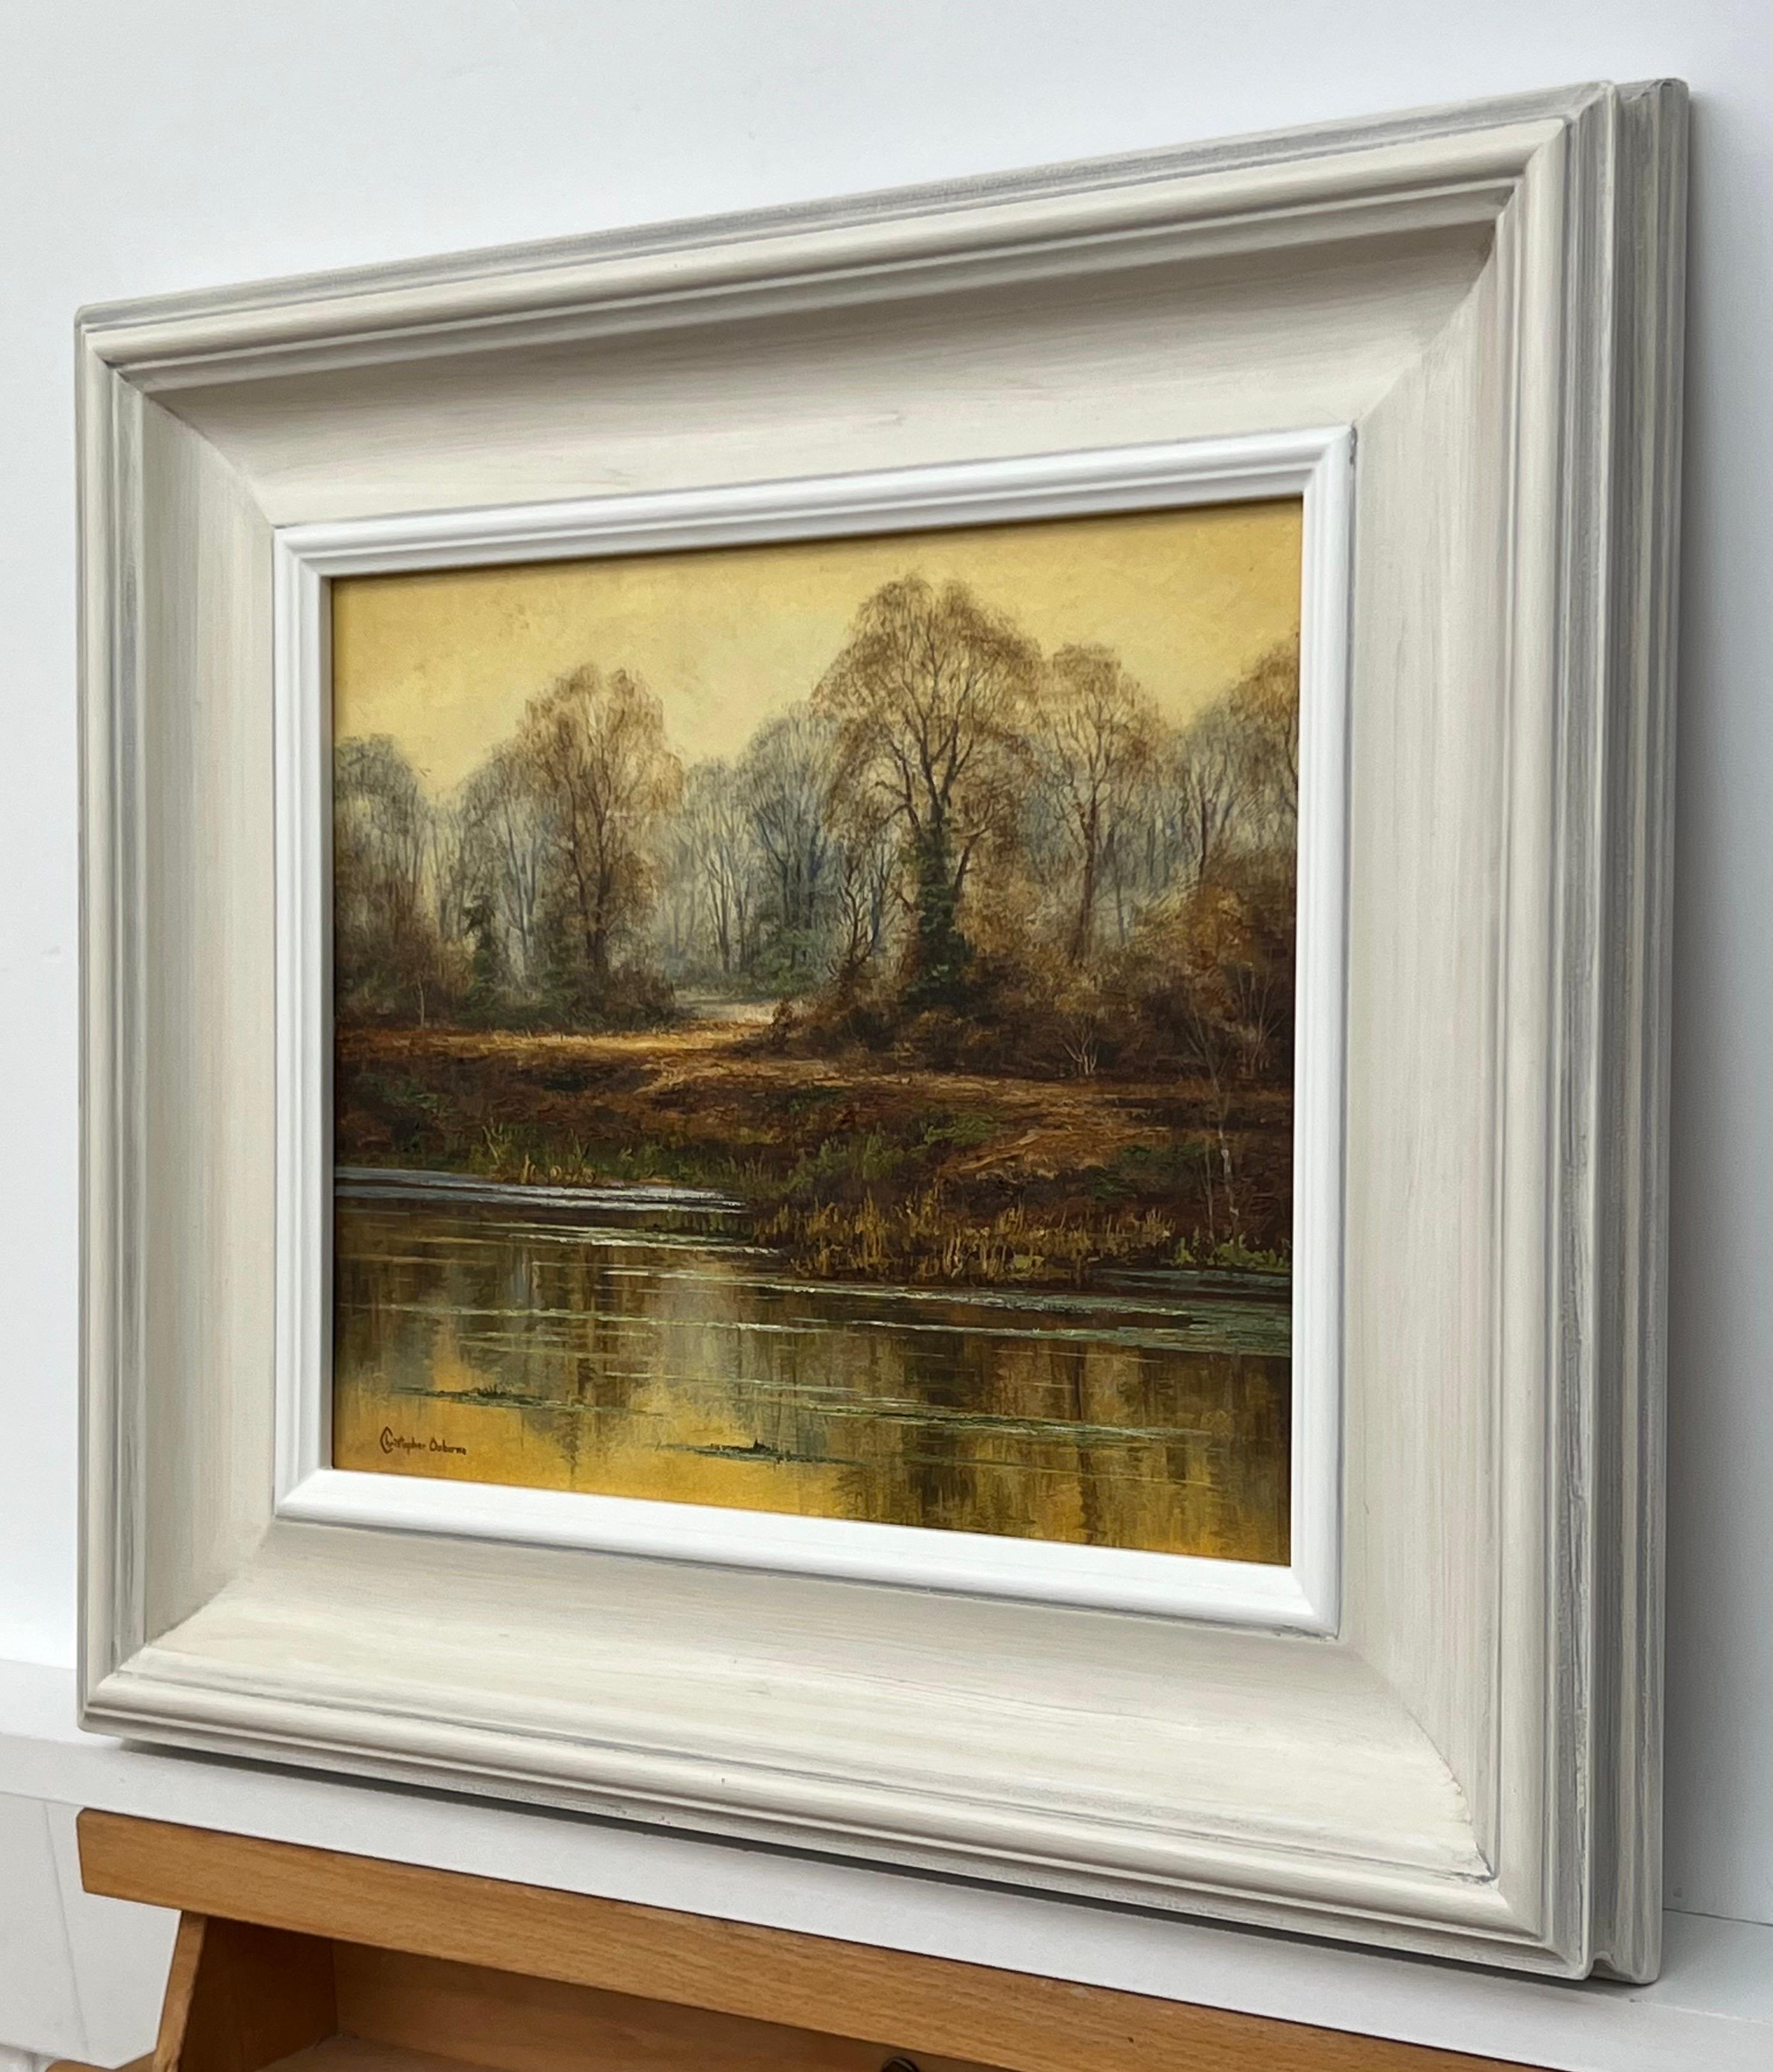 Réflexions sur un étang de forêt dans la campagne anglaise avec des jaunes et des bruns chauds, par l'artiste britannique du XXe siècle, Christopher Osborne.

L'œuvre d'art mesure 12 x 10 pouces
Le cadre mesure 18 x 16 pouces

Original unique,